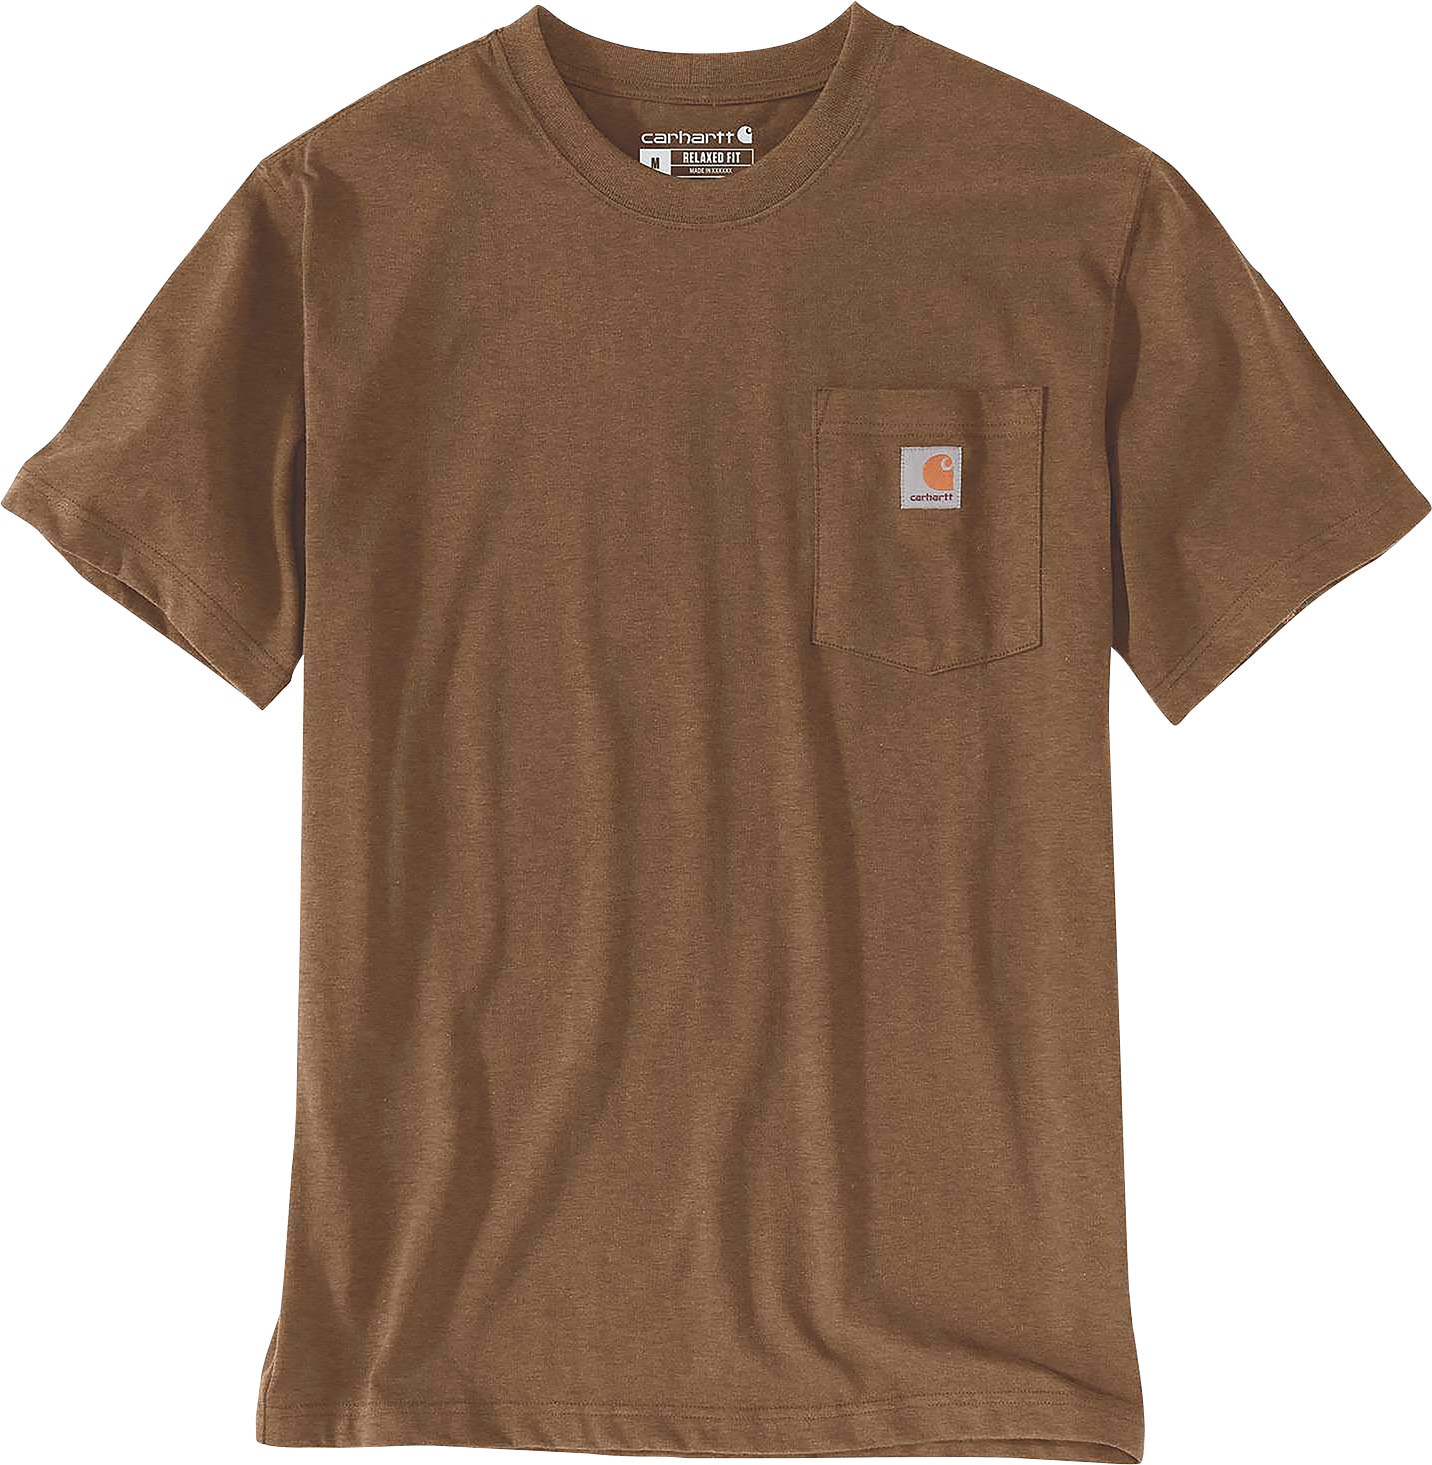 T-Shirt, Carhartt tlg., kaufen (2 2er Set)